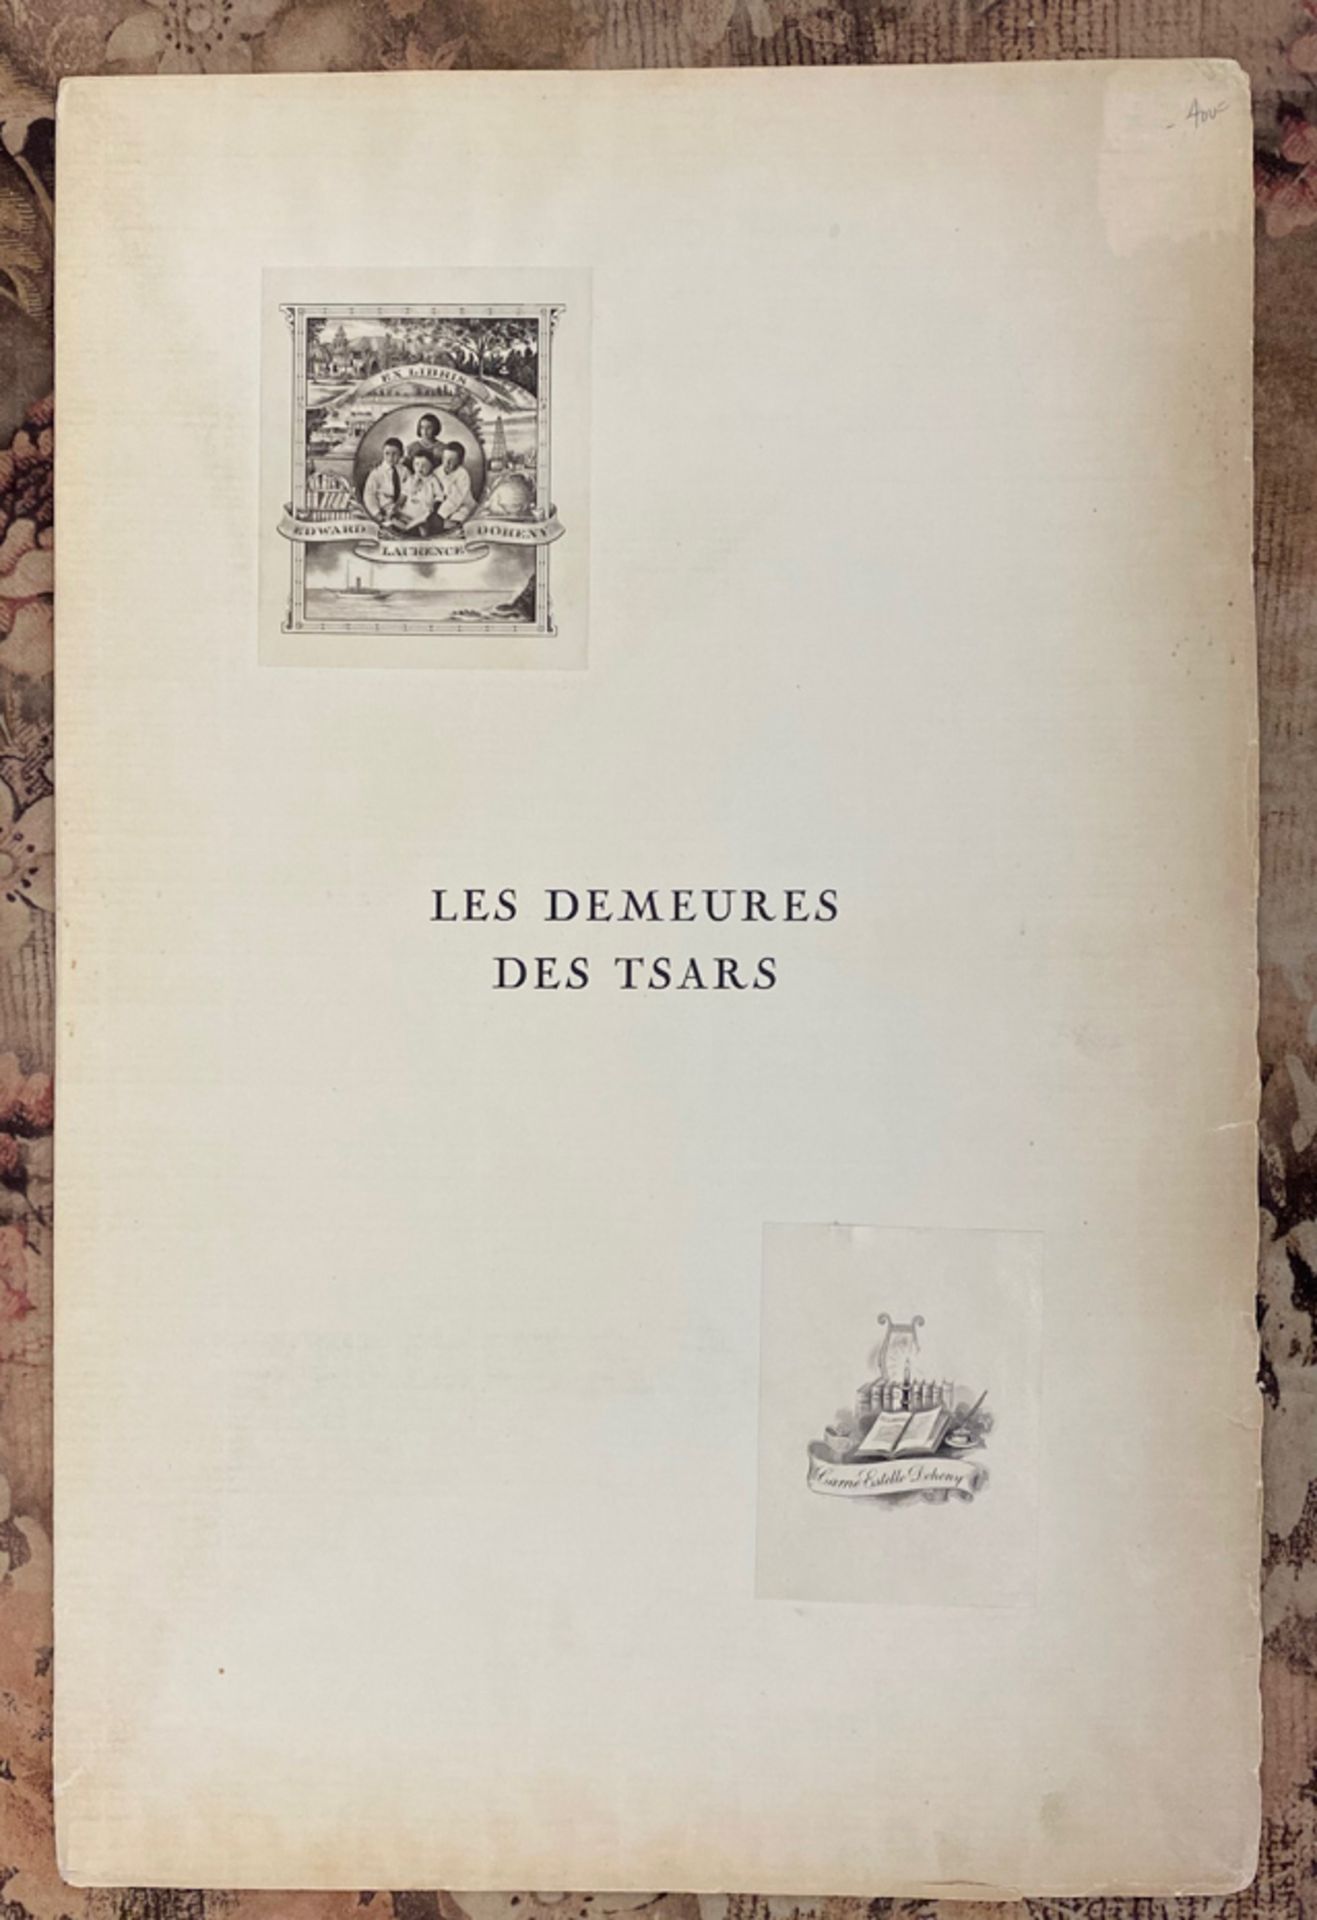 LOUKOMSKI, G.K., LES DEMEURES DES TSARS, PARIS 1929 - Image 3 of 17